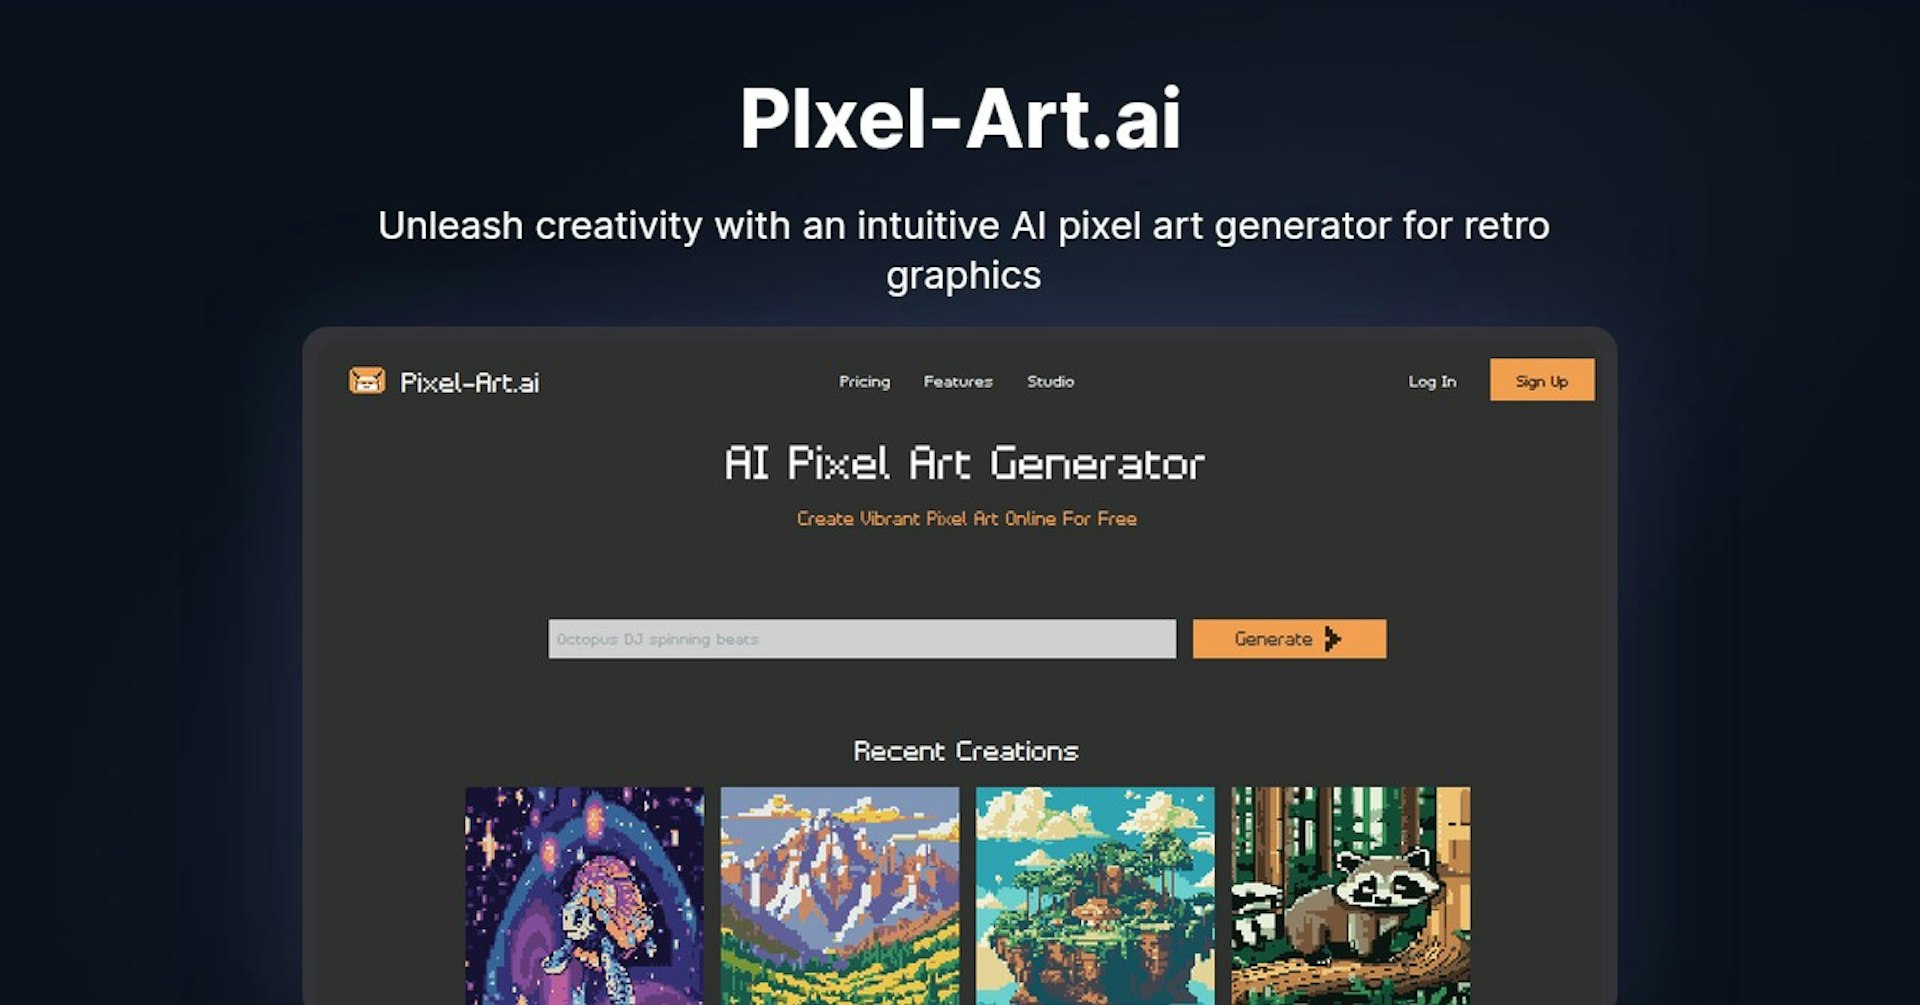 PIxel-Art.ai